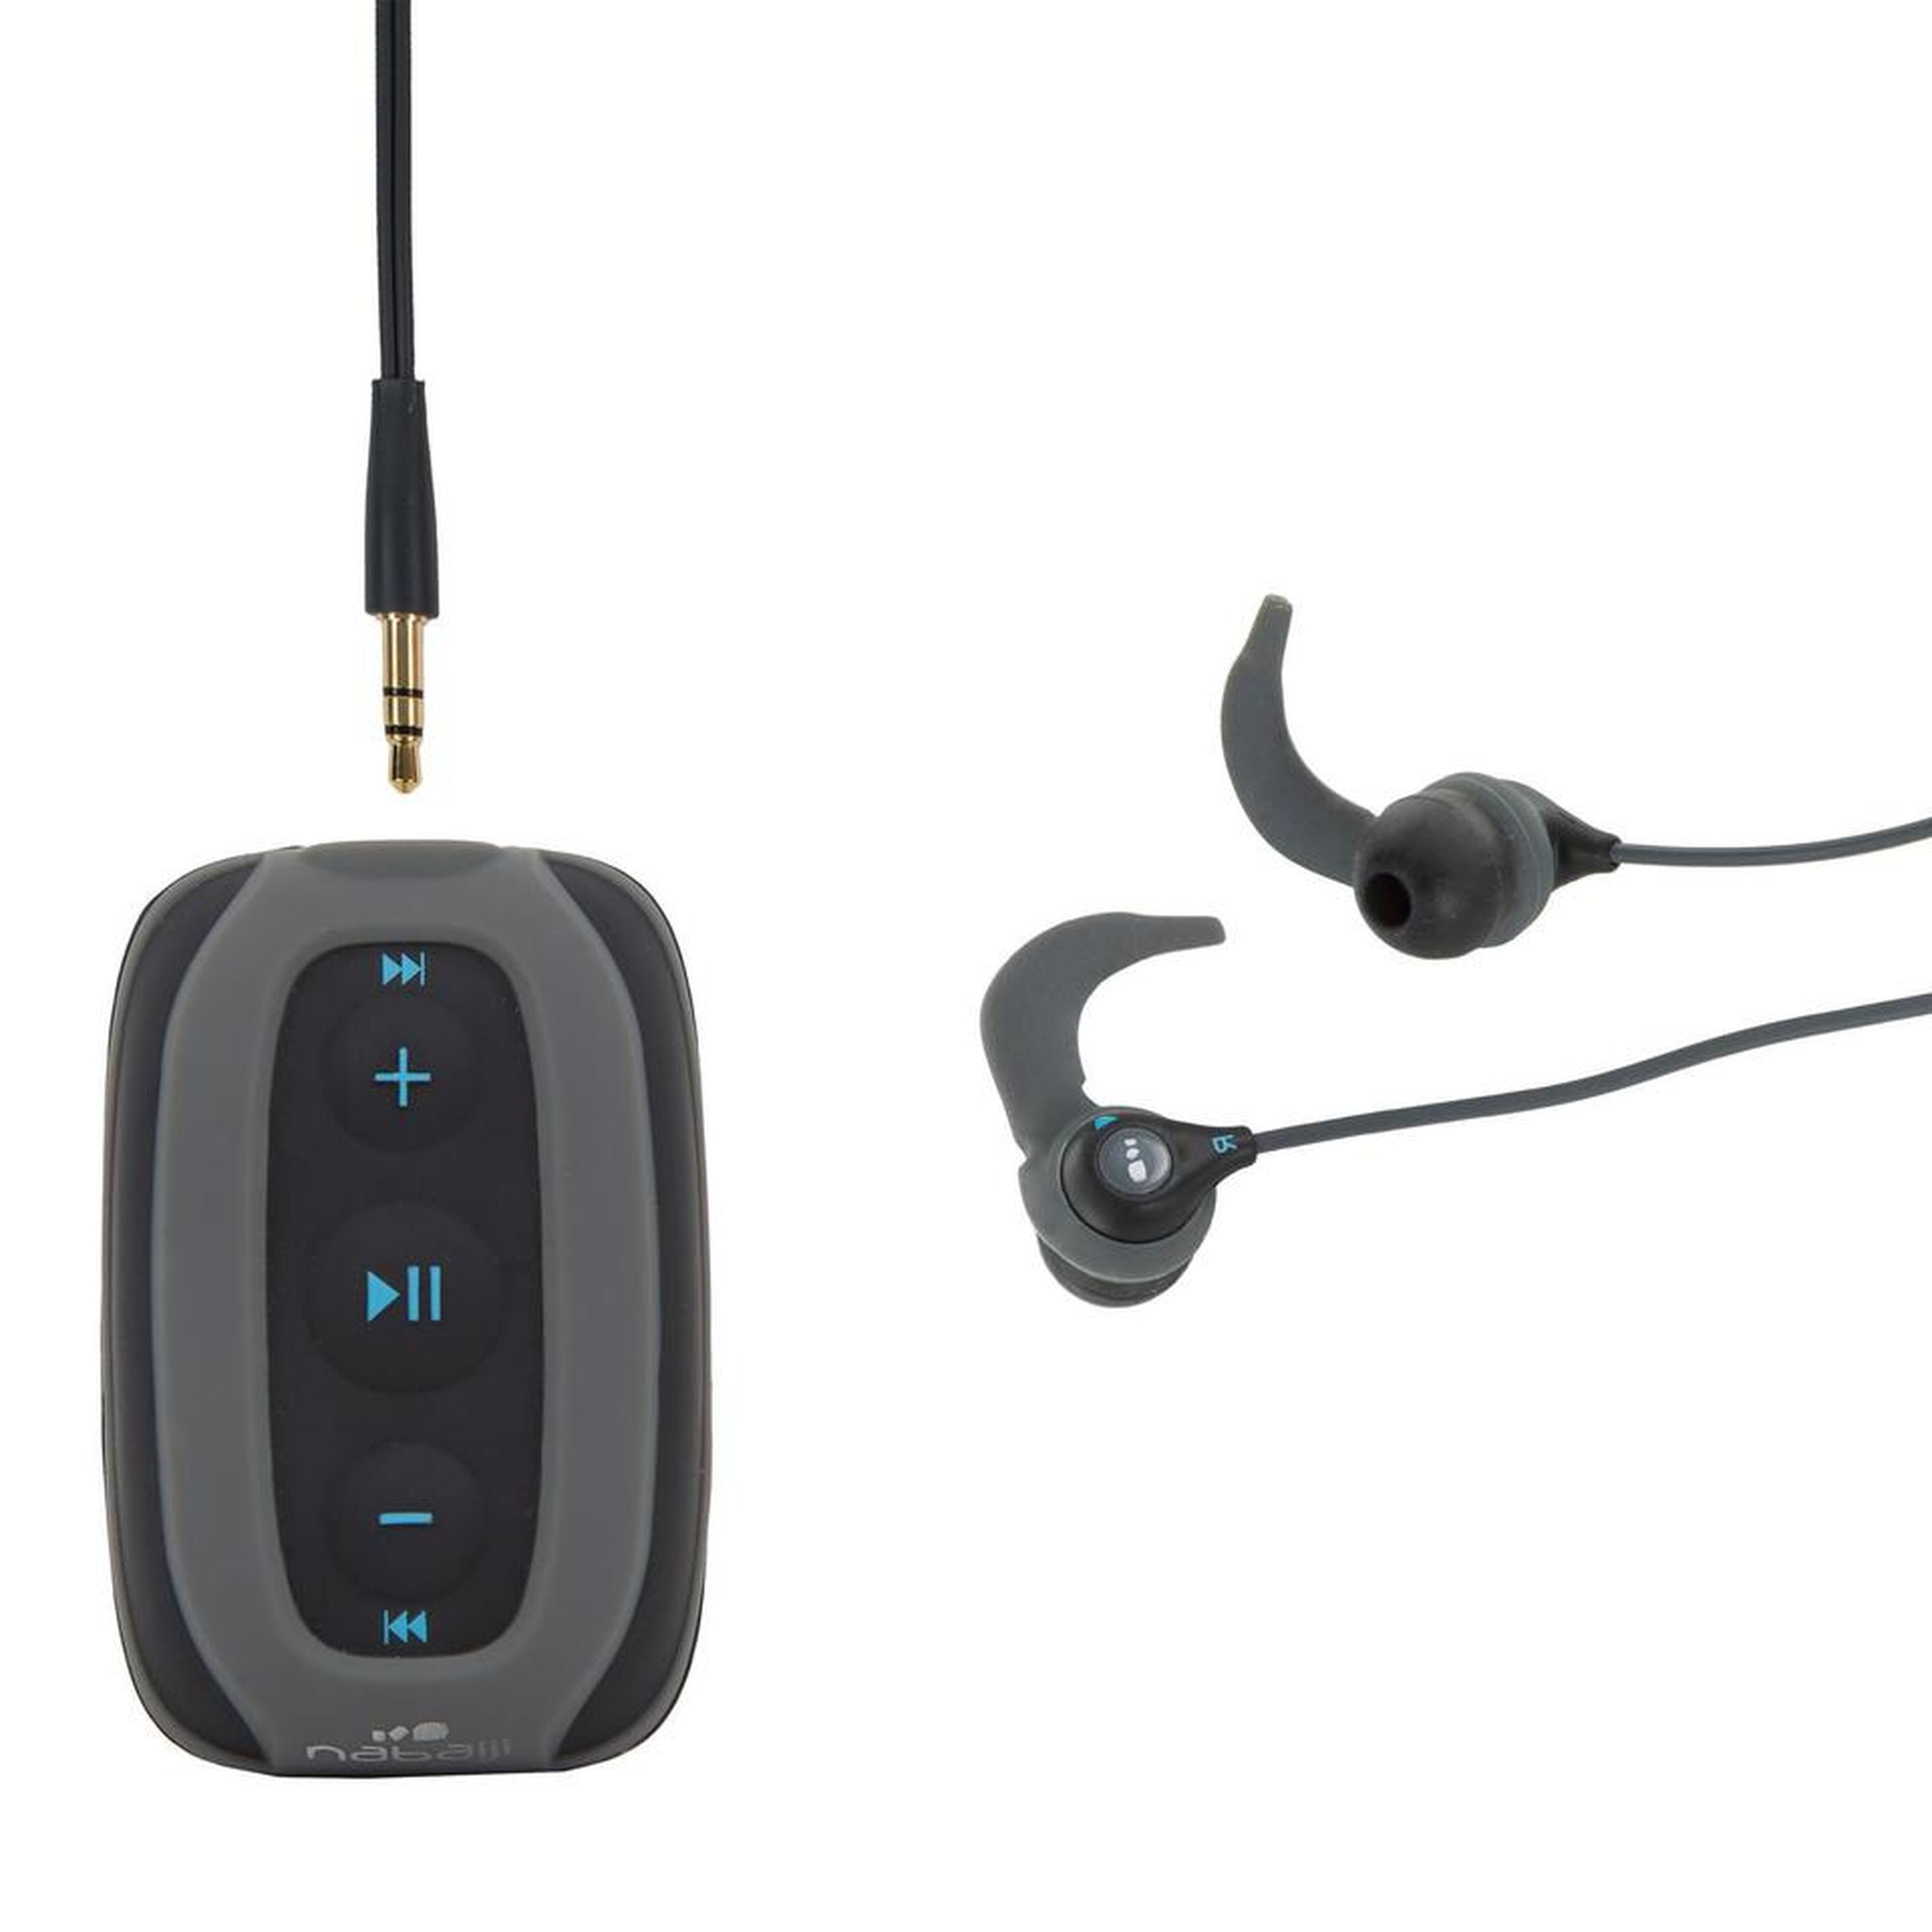 Los auriculares perfectos de Decathlon para escuchar música mientras nadas